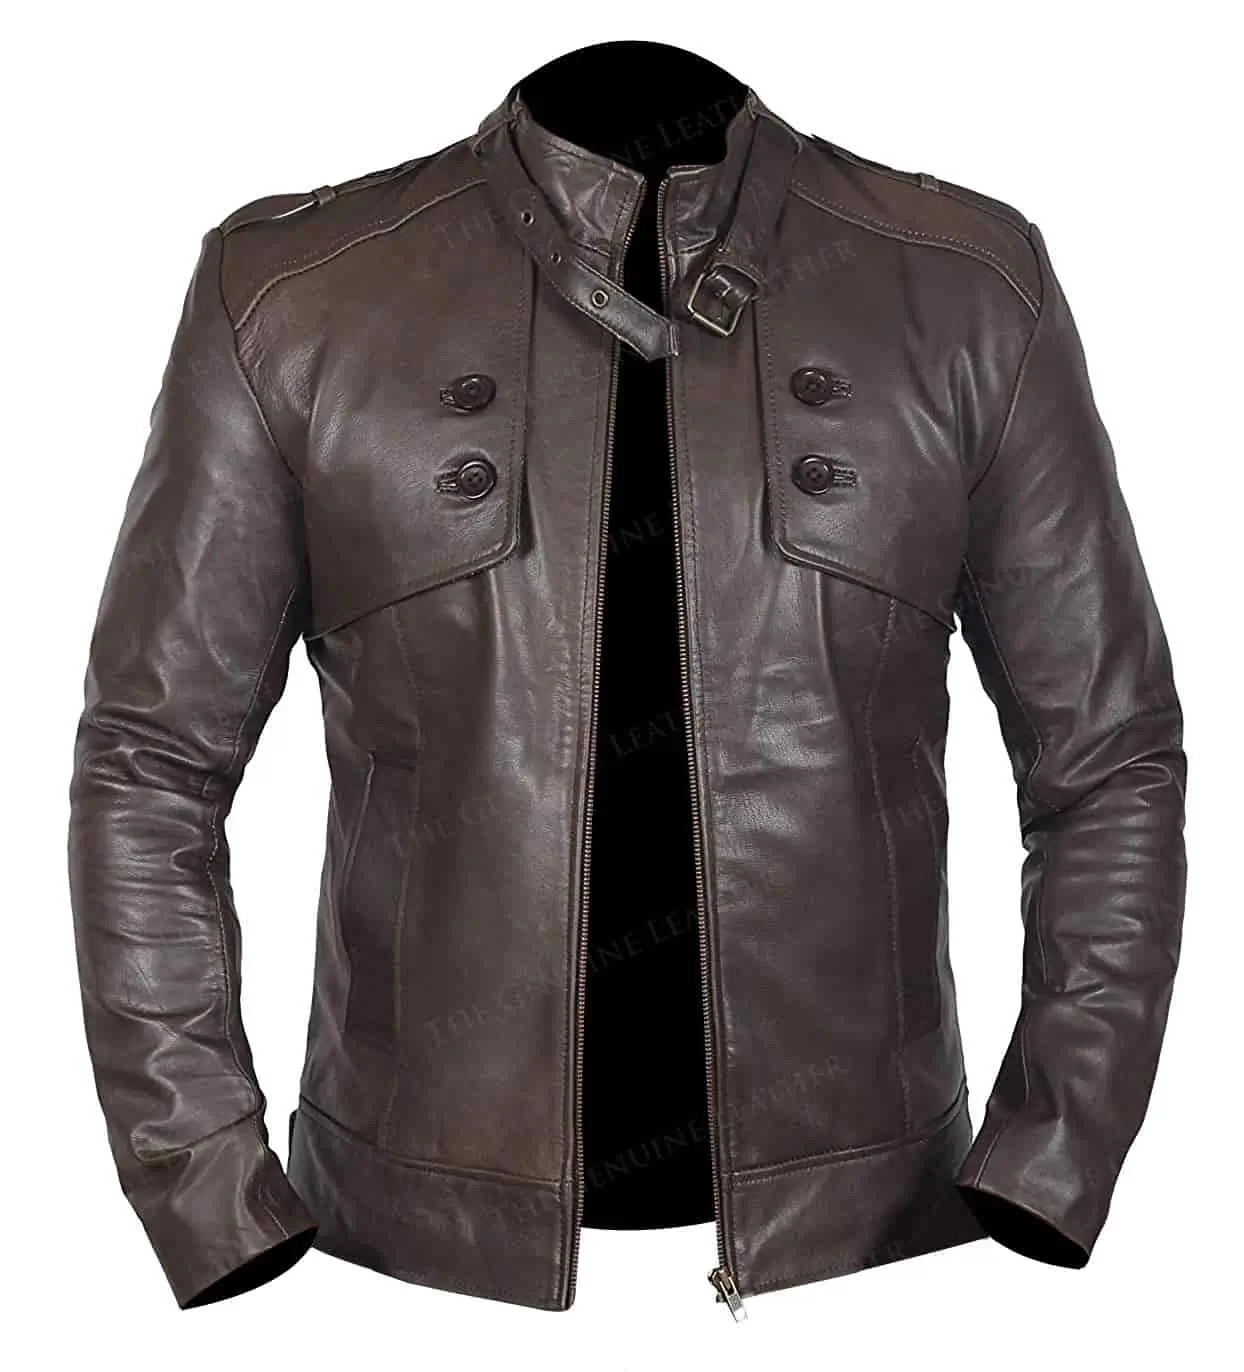 Brown Motorcycle Jacket || Motorcycle Jacket